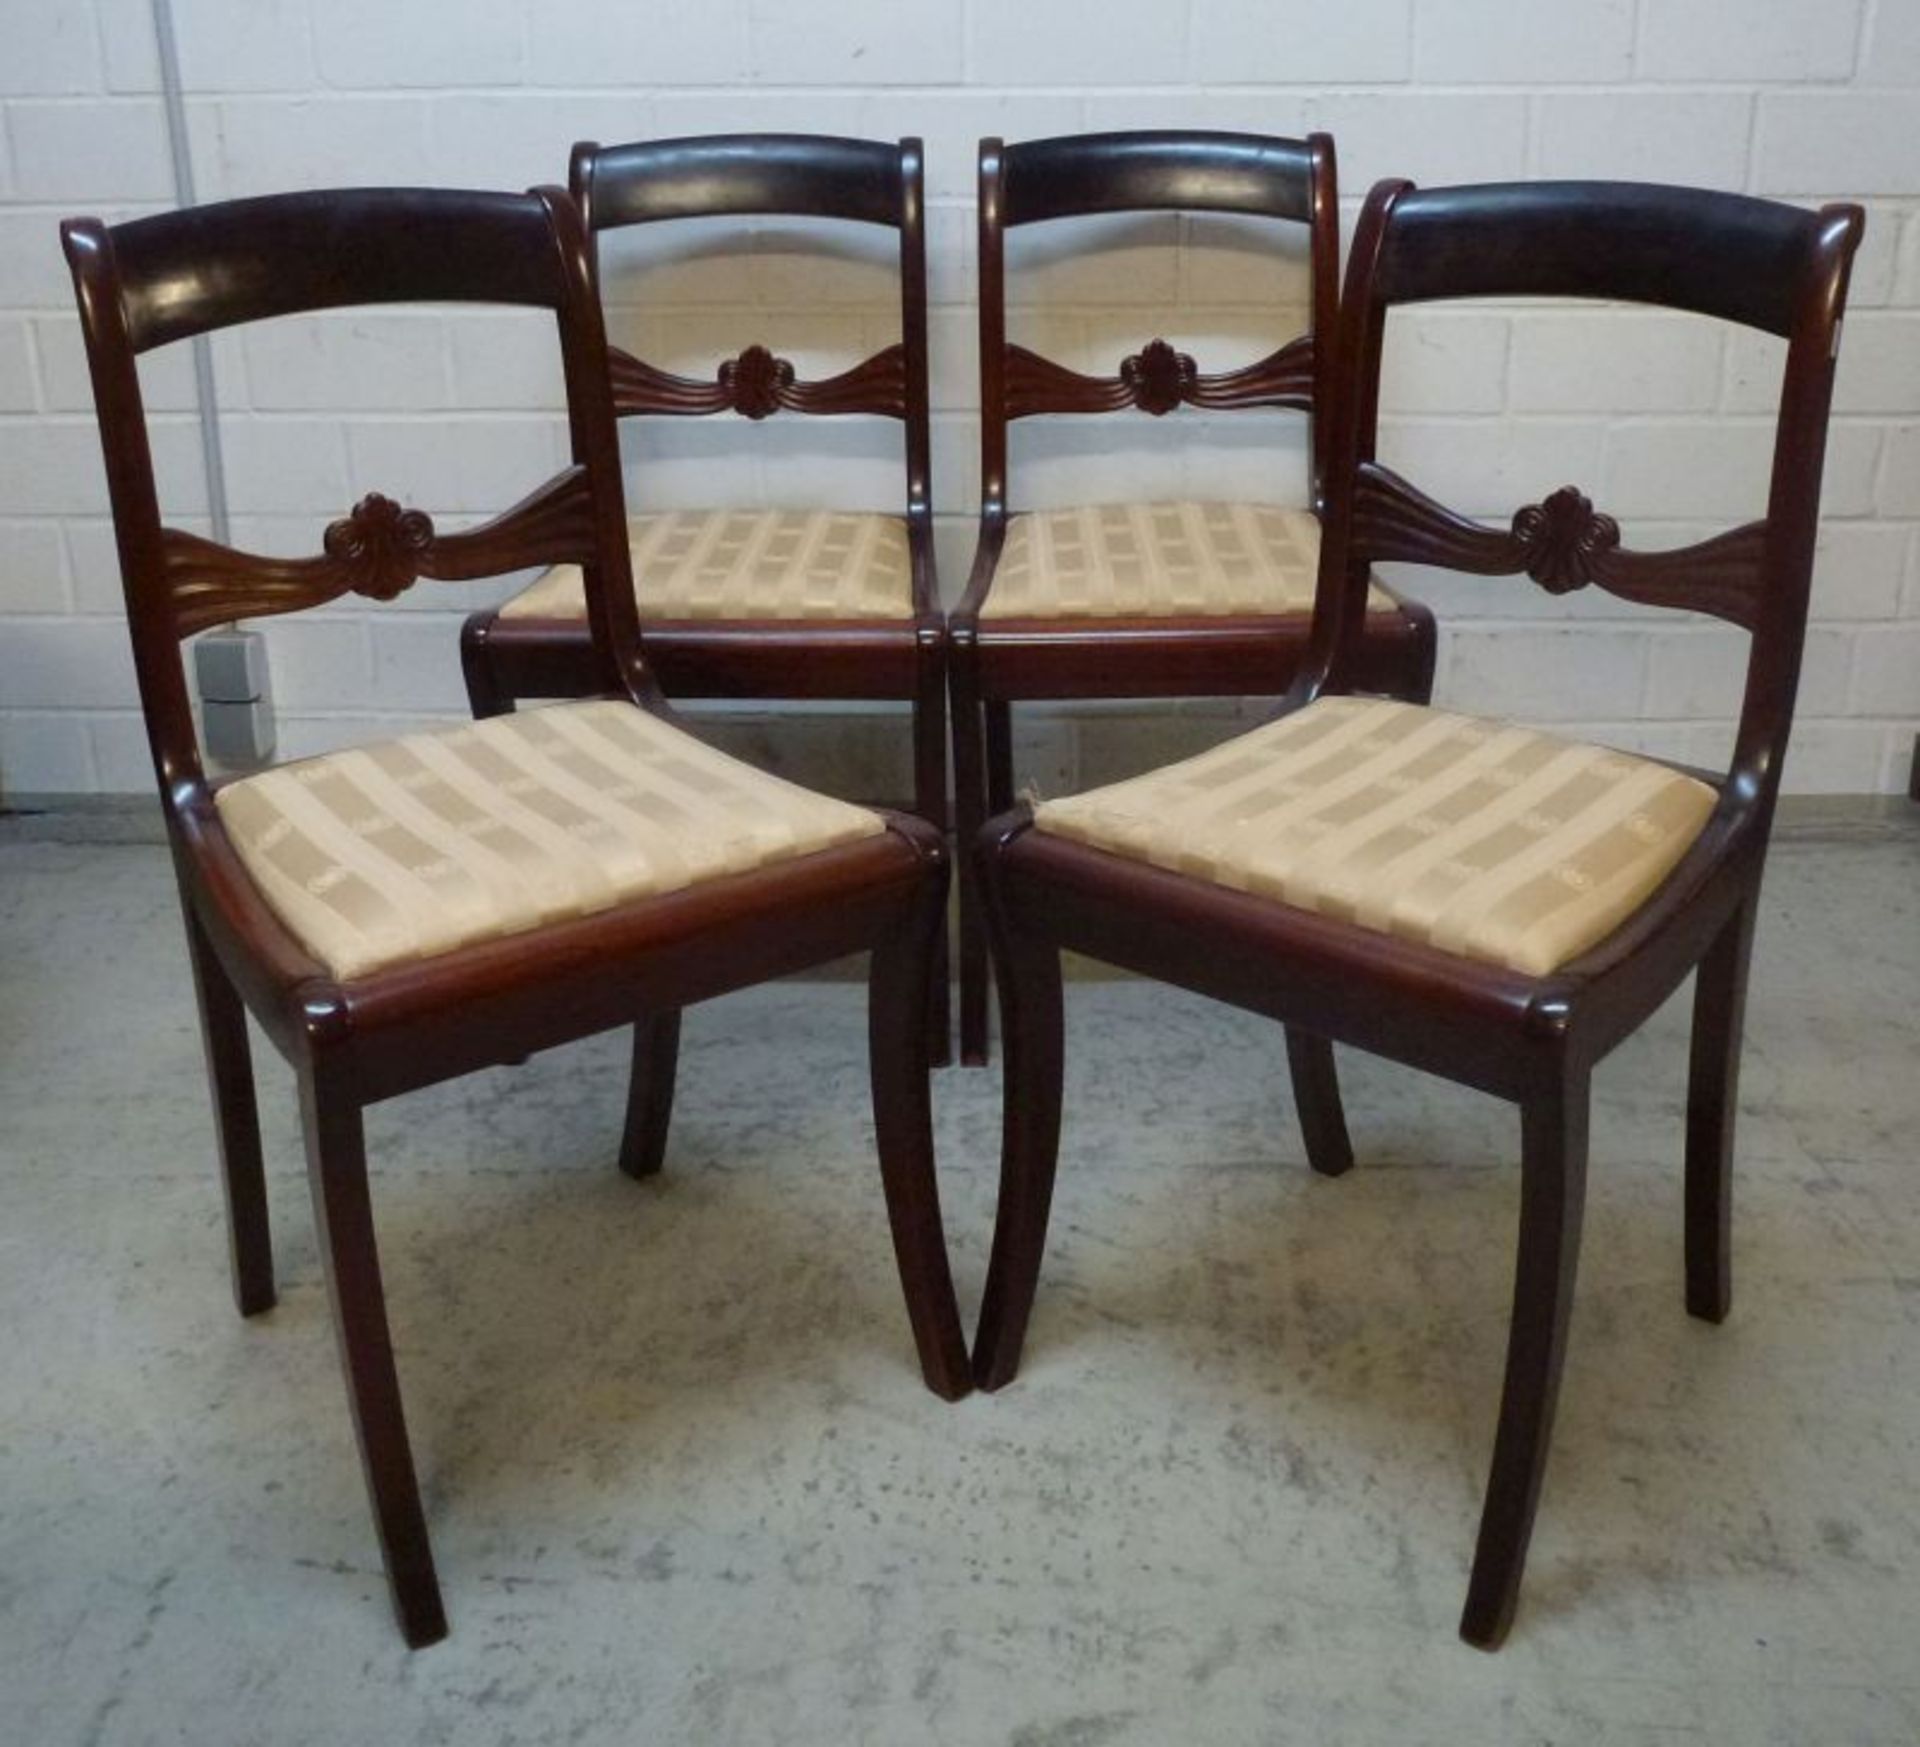 4 Biedermeier Stühle, 20.Jh.Mahagoni, Säbelbeine, Rücken mit ornamentaler Strebe, Sitz gep., H/Sh